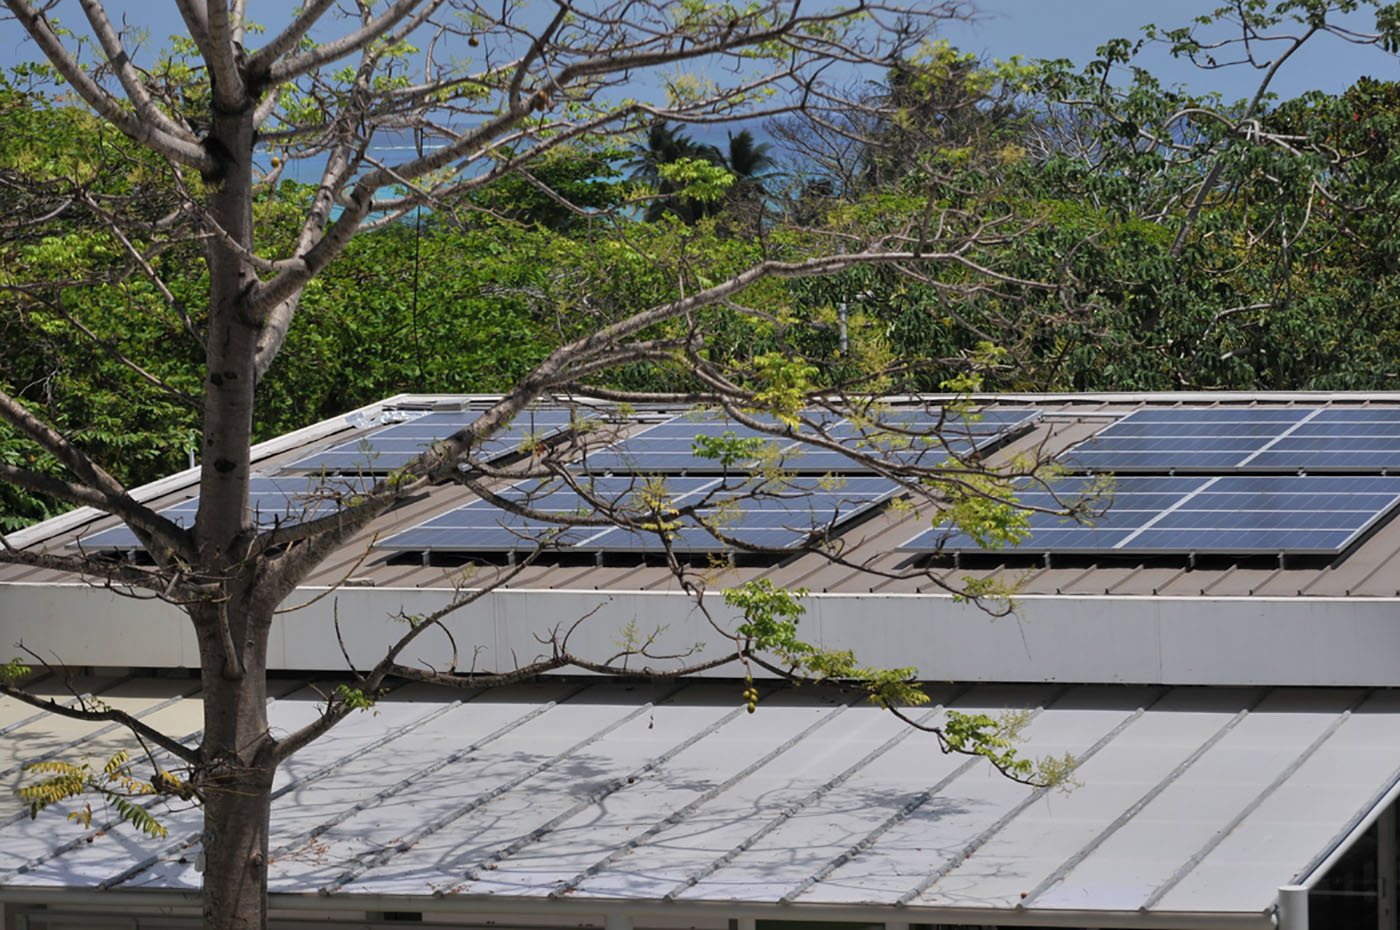 Si en San Andrés se implementara un sistema de energía solar fotovoltaica se tendría un importante ahorro al año para la Isla. Foto: archivo Unimedios.